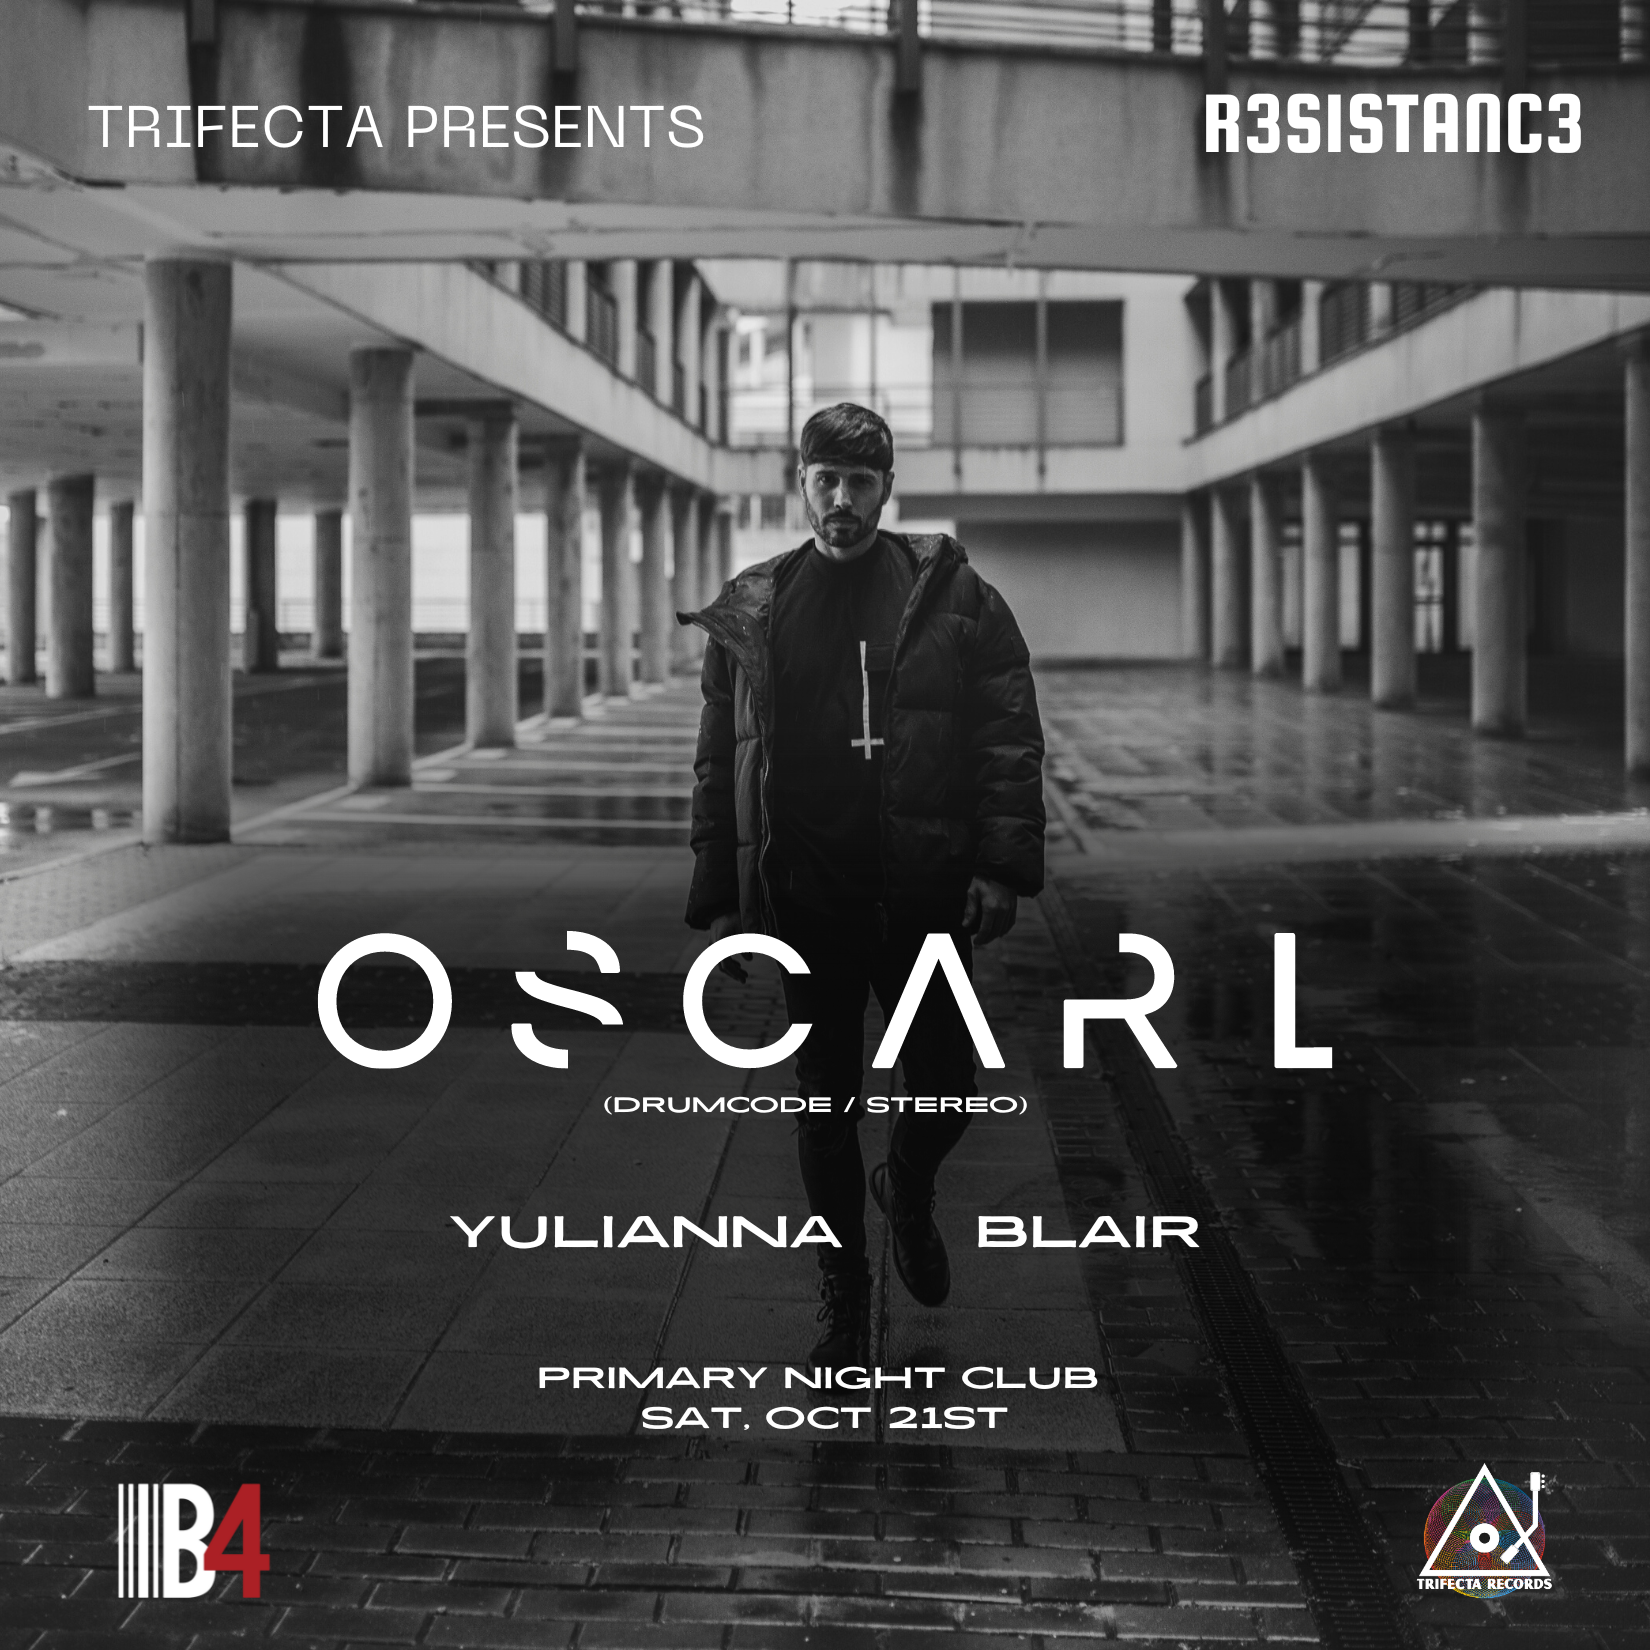 Trifecta Records presents: Oscar L - Página frontal